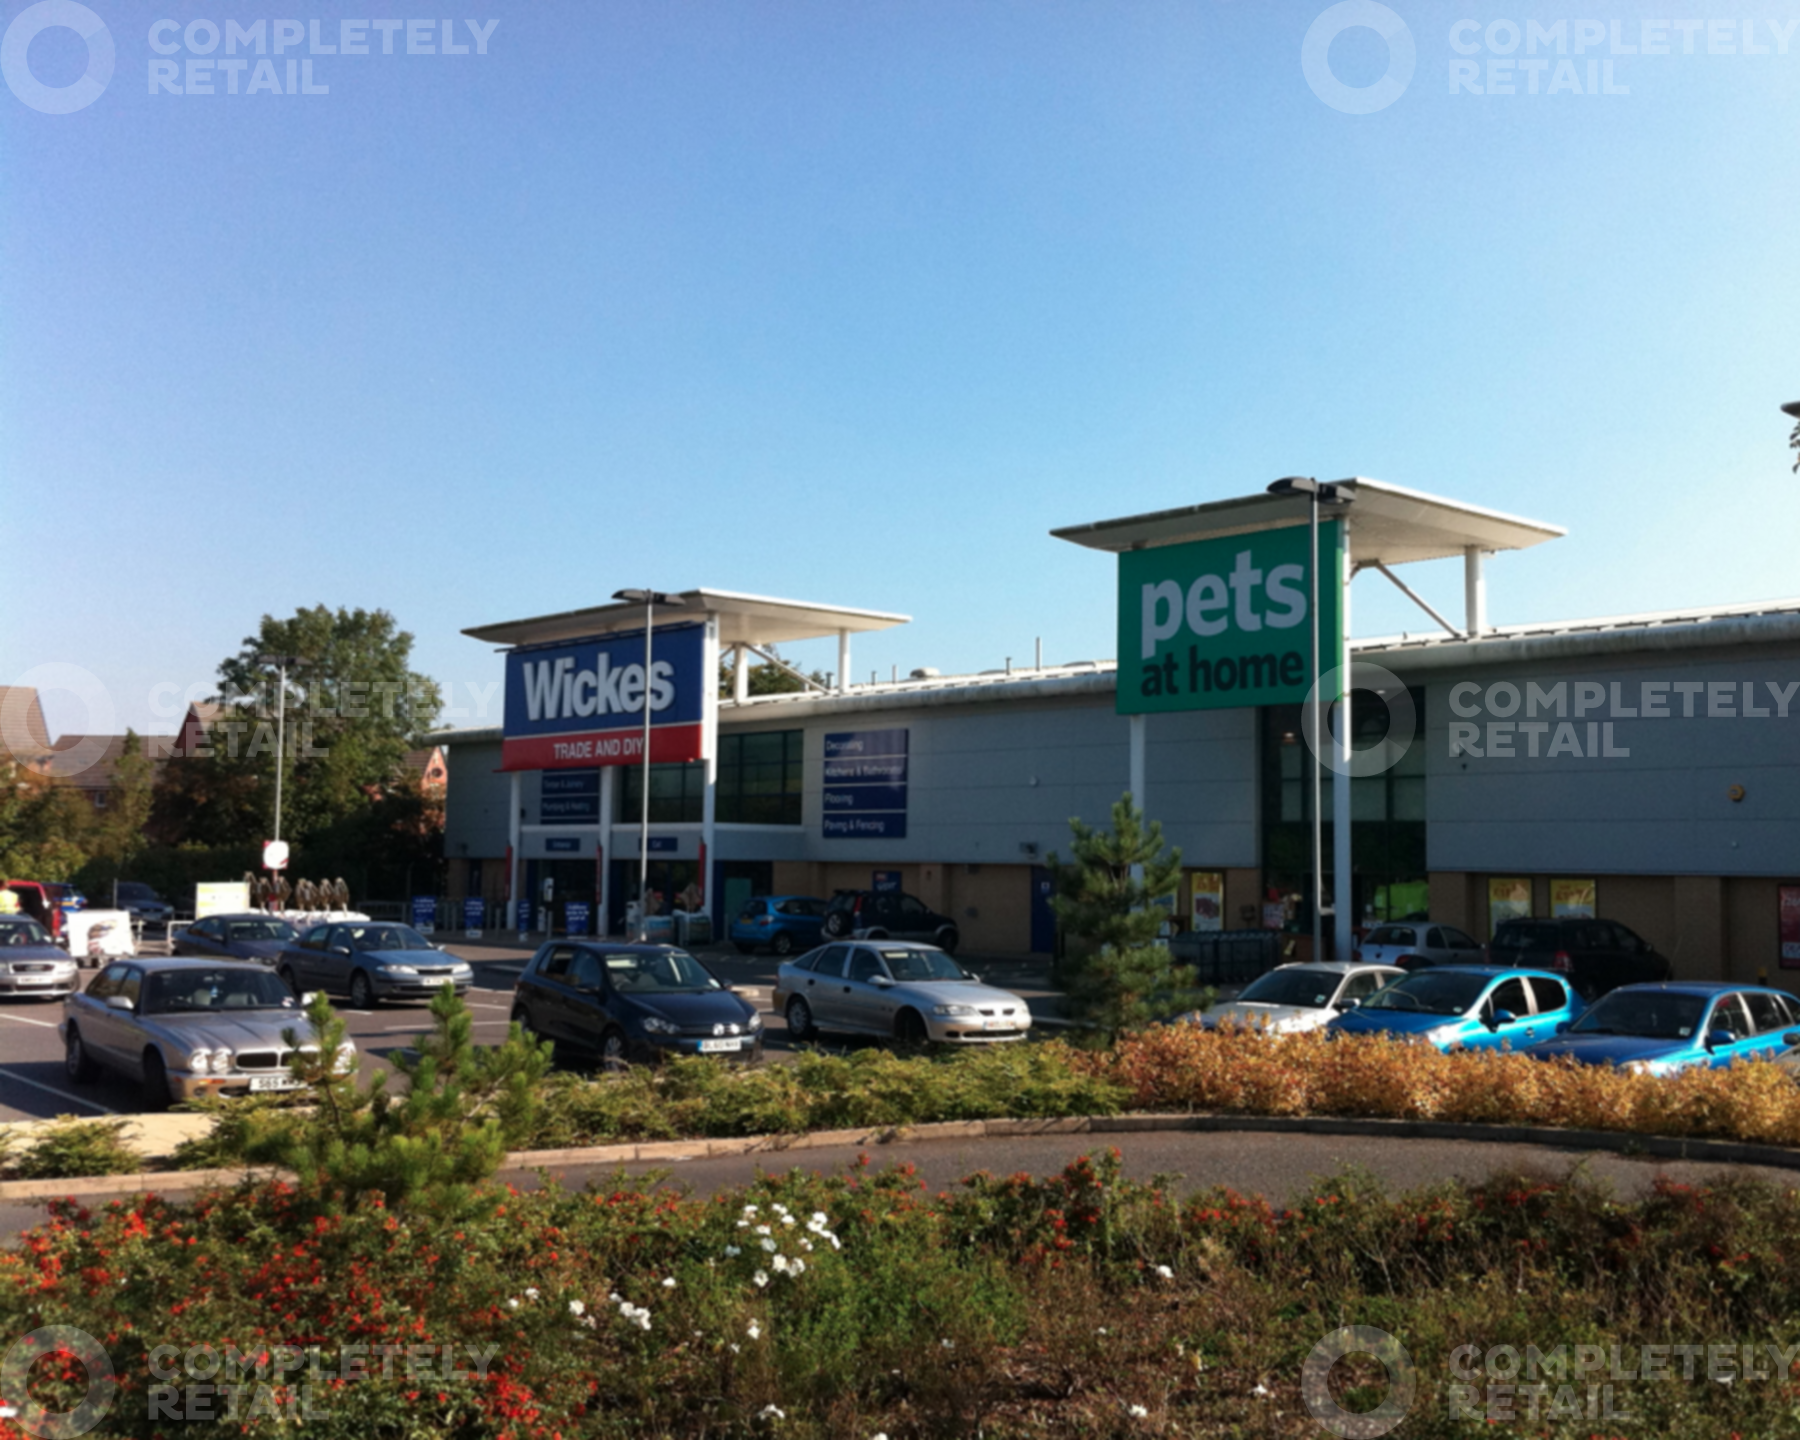 Chippenham Retail Park